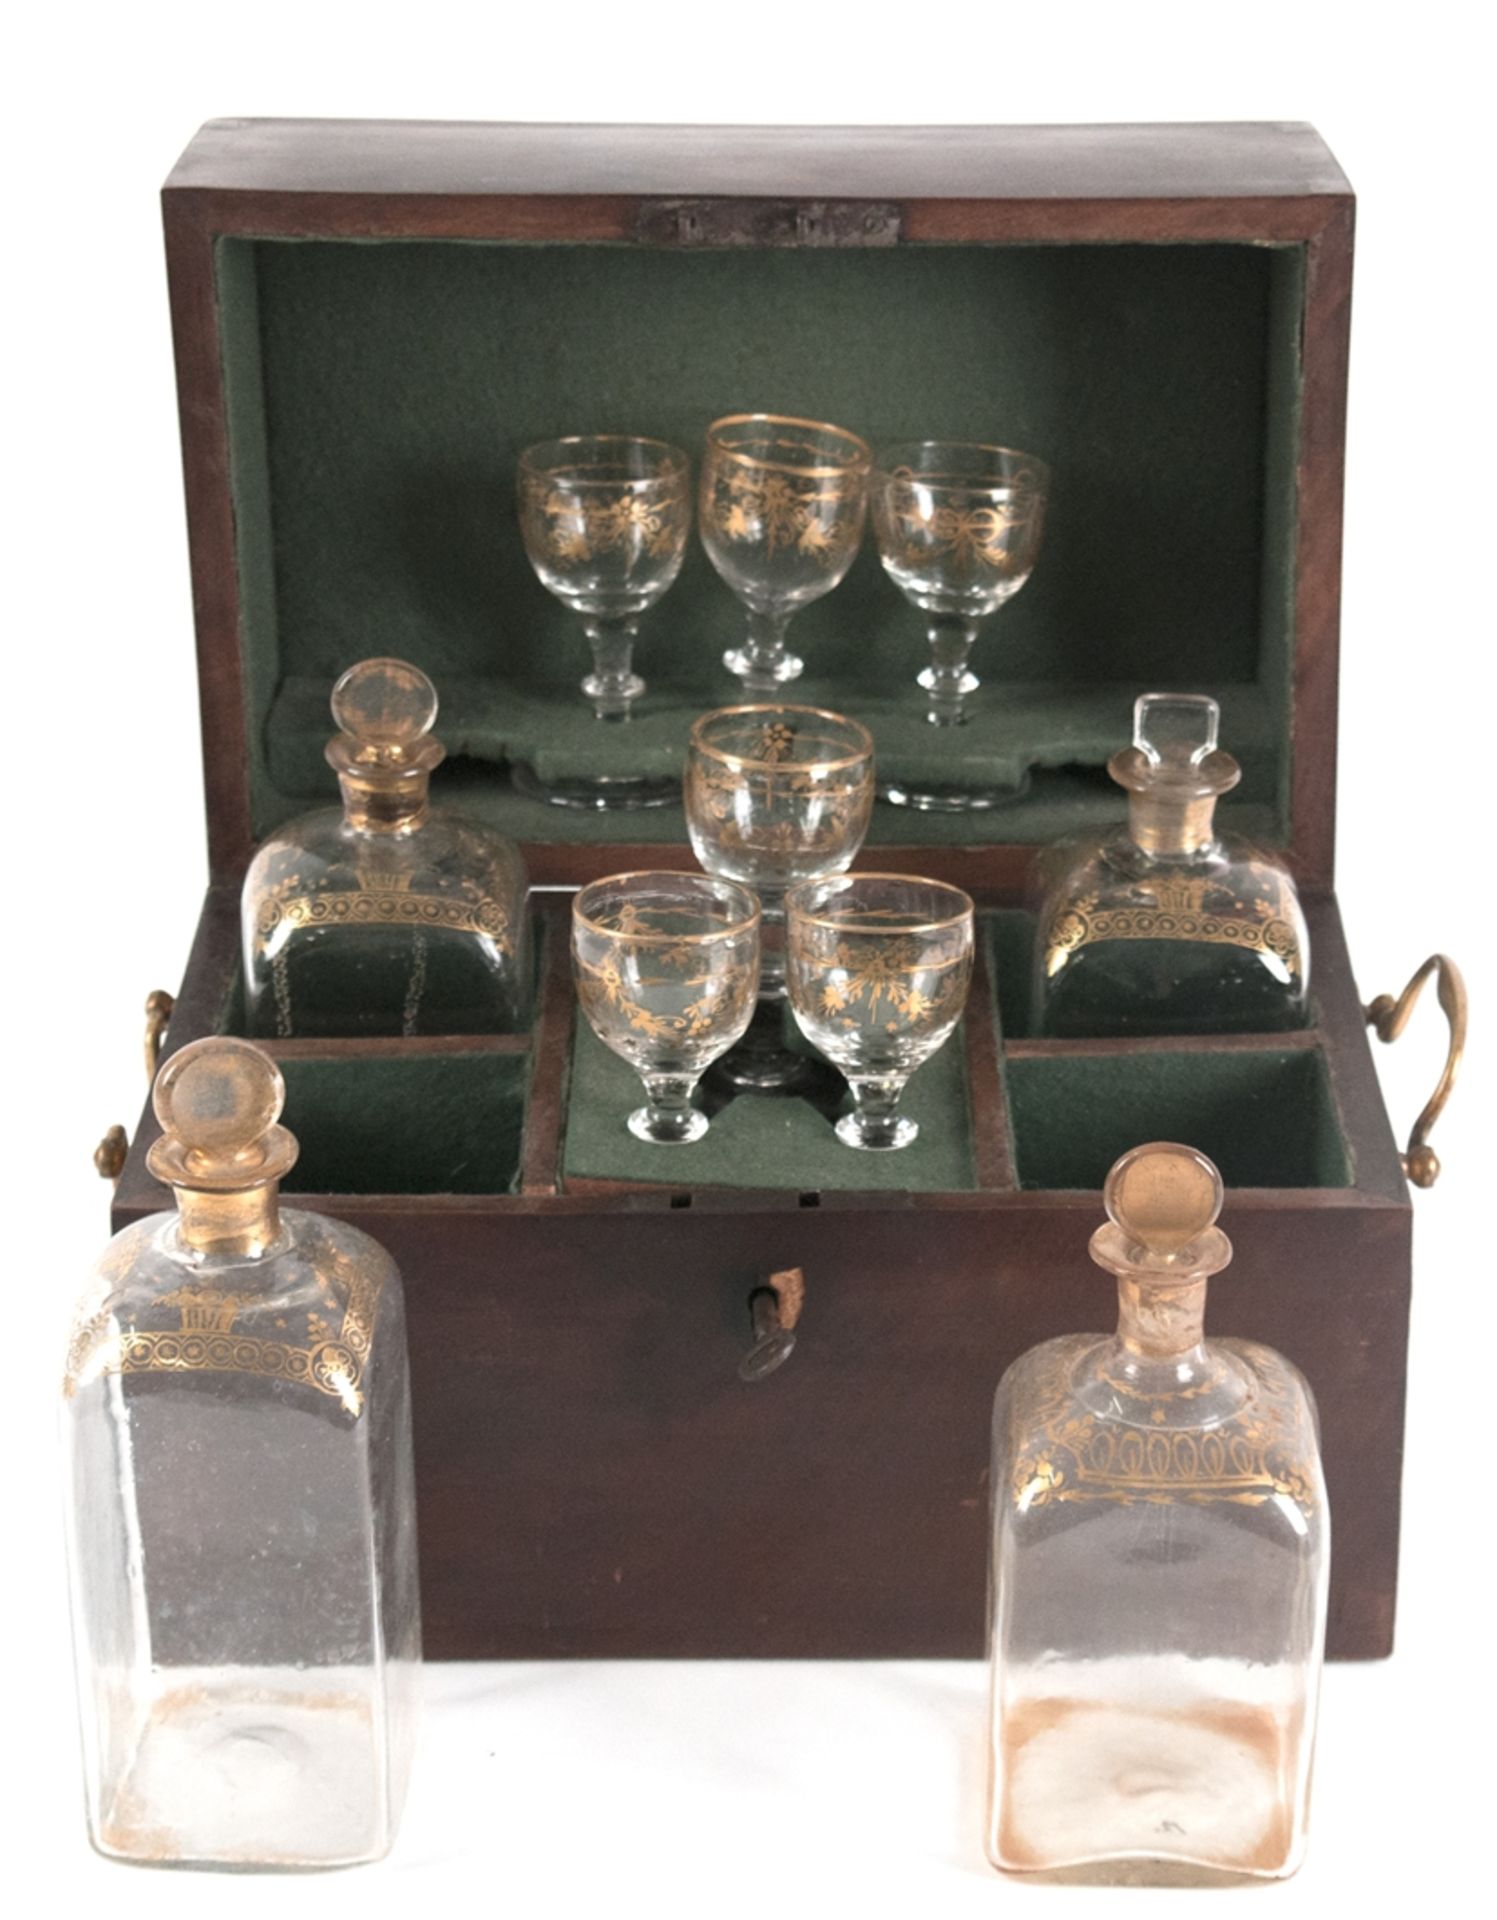 Reisebar/ Advokatenbar, um 1860, mit 4 Originalflaschen, quadratische Form mit Goldverzierung, dazu